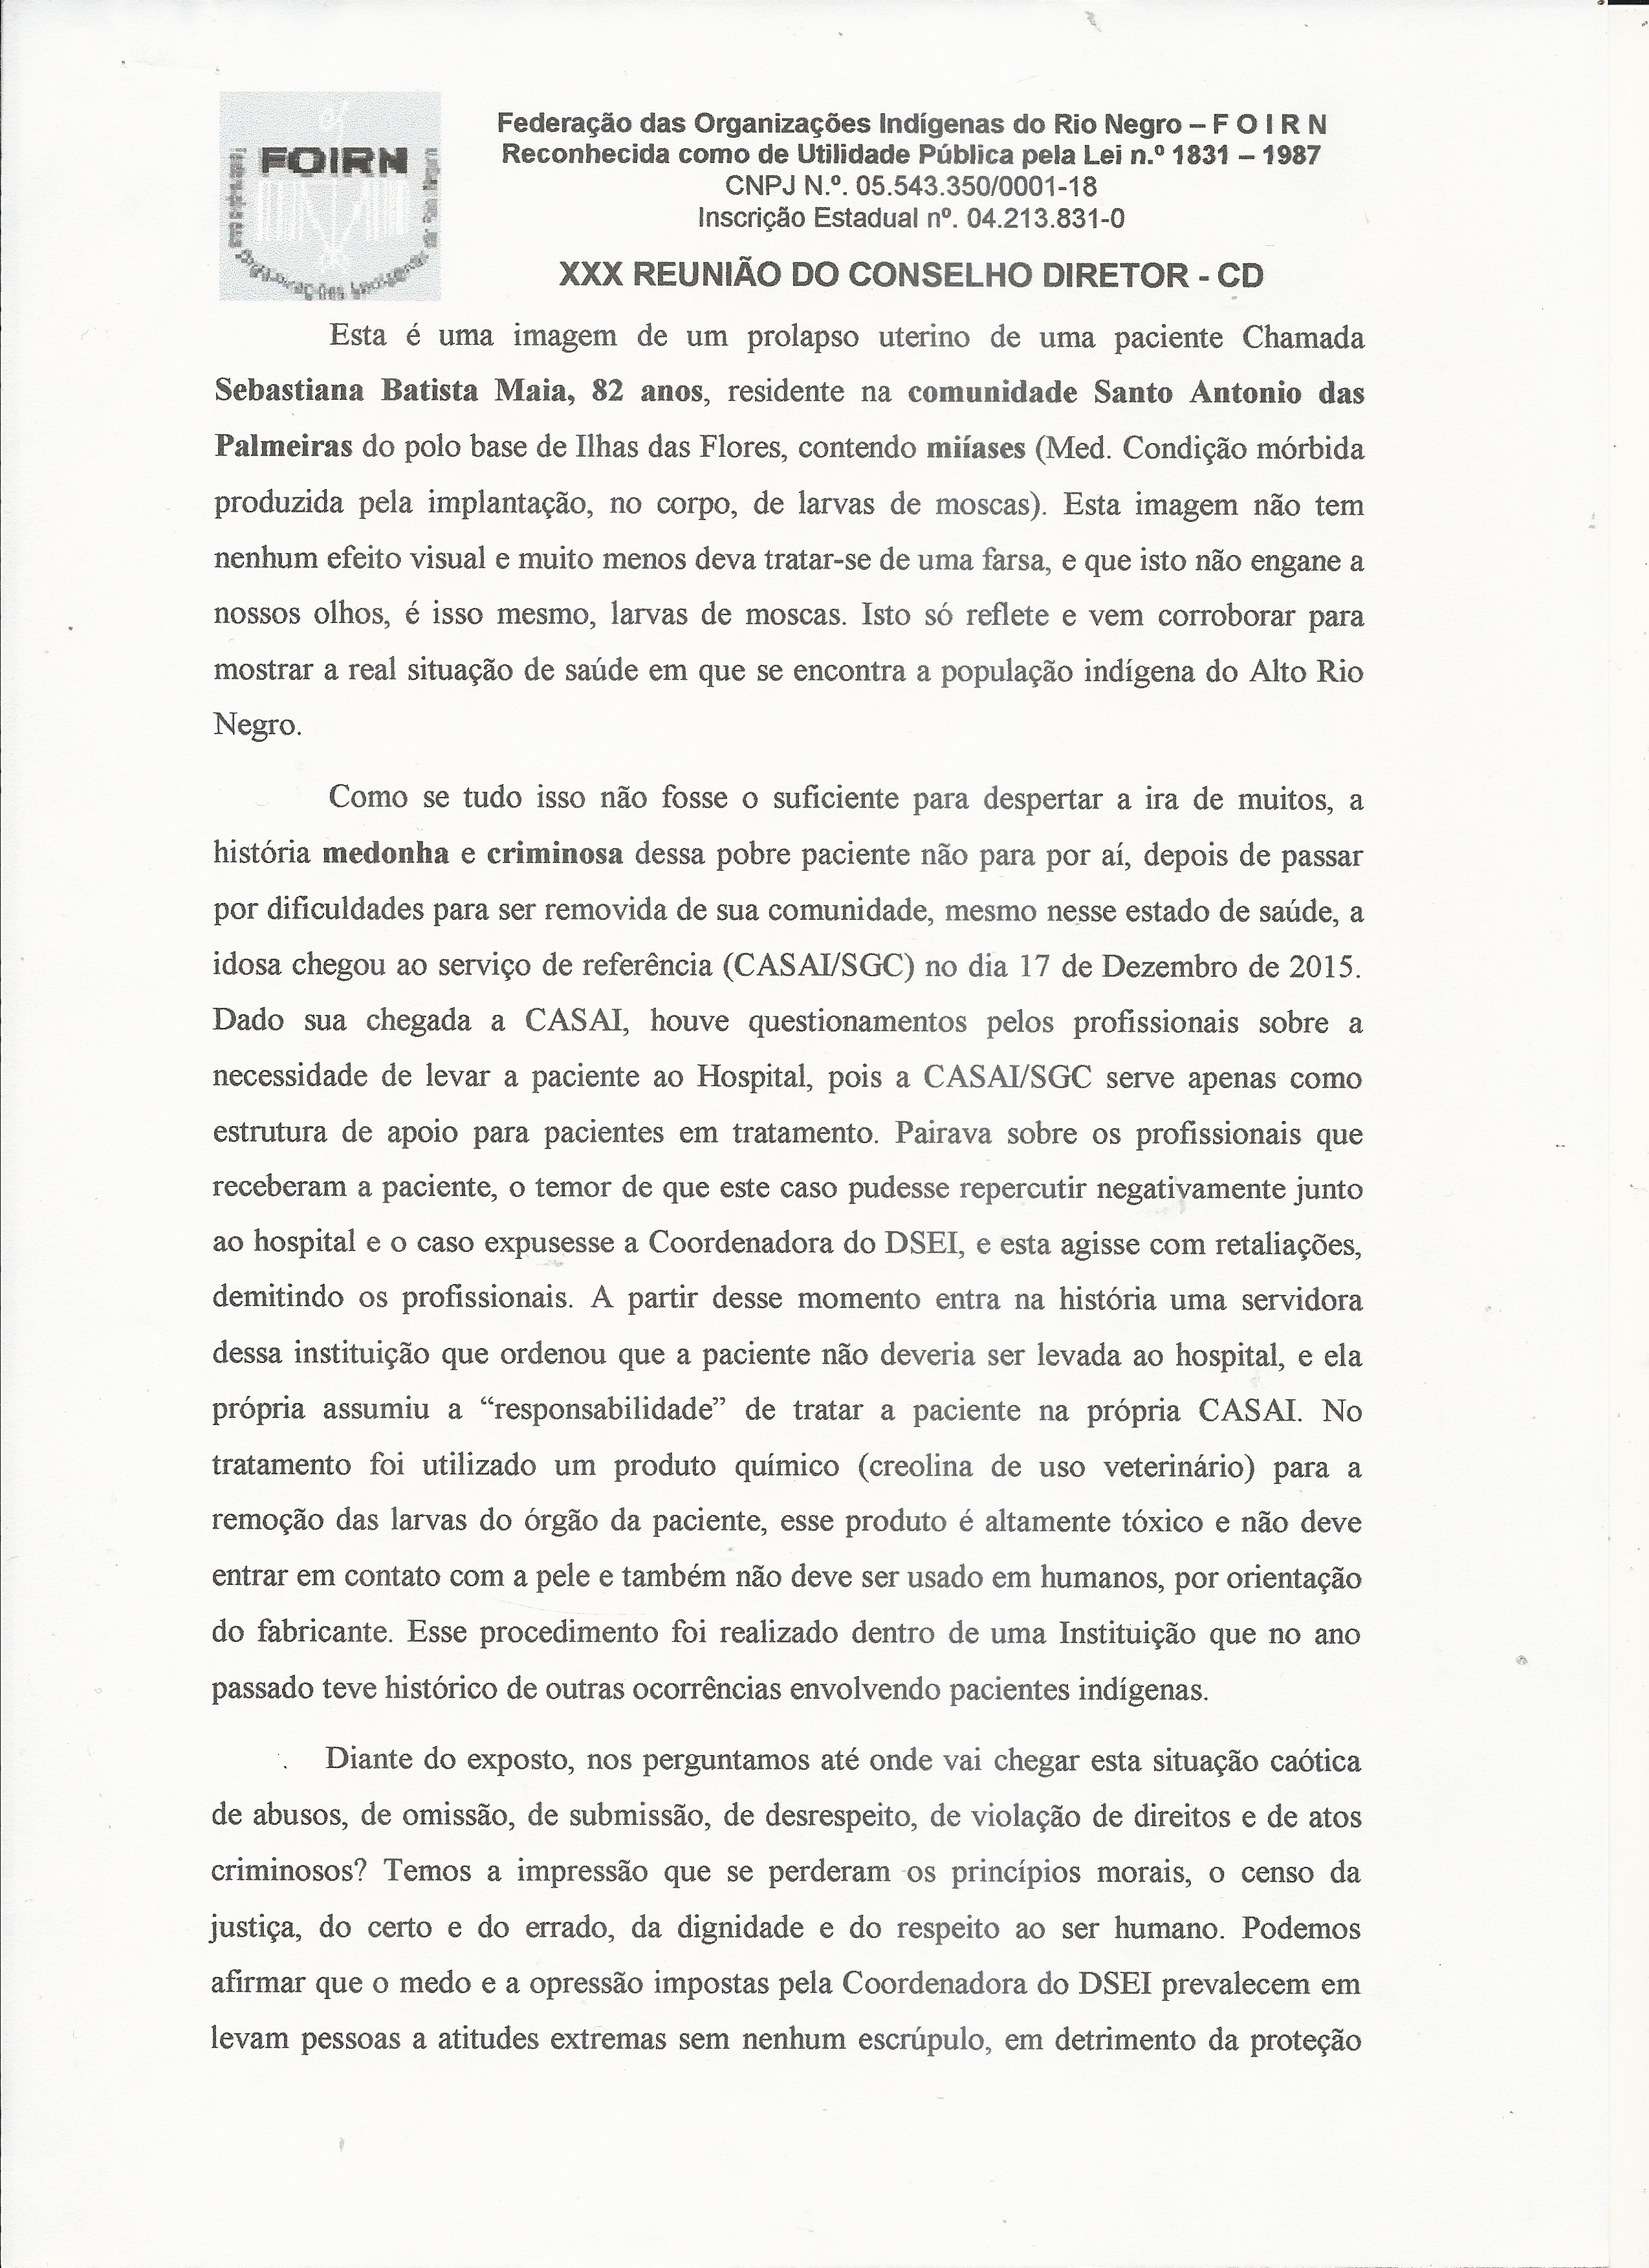 Carta Denúncia XXX CD FOIRN_Saúde Indígena -3